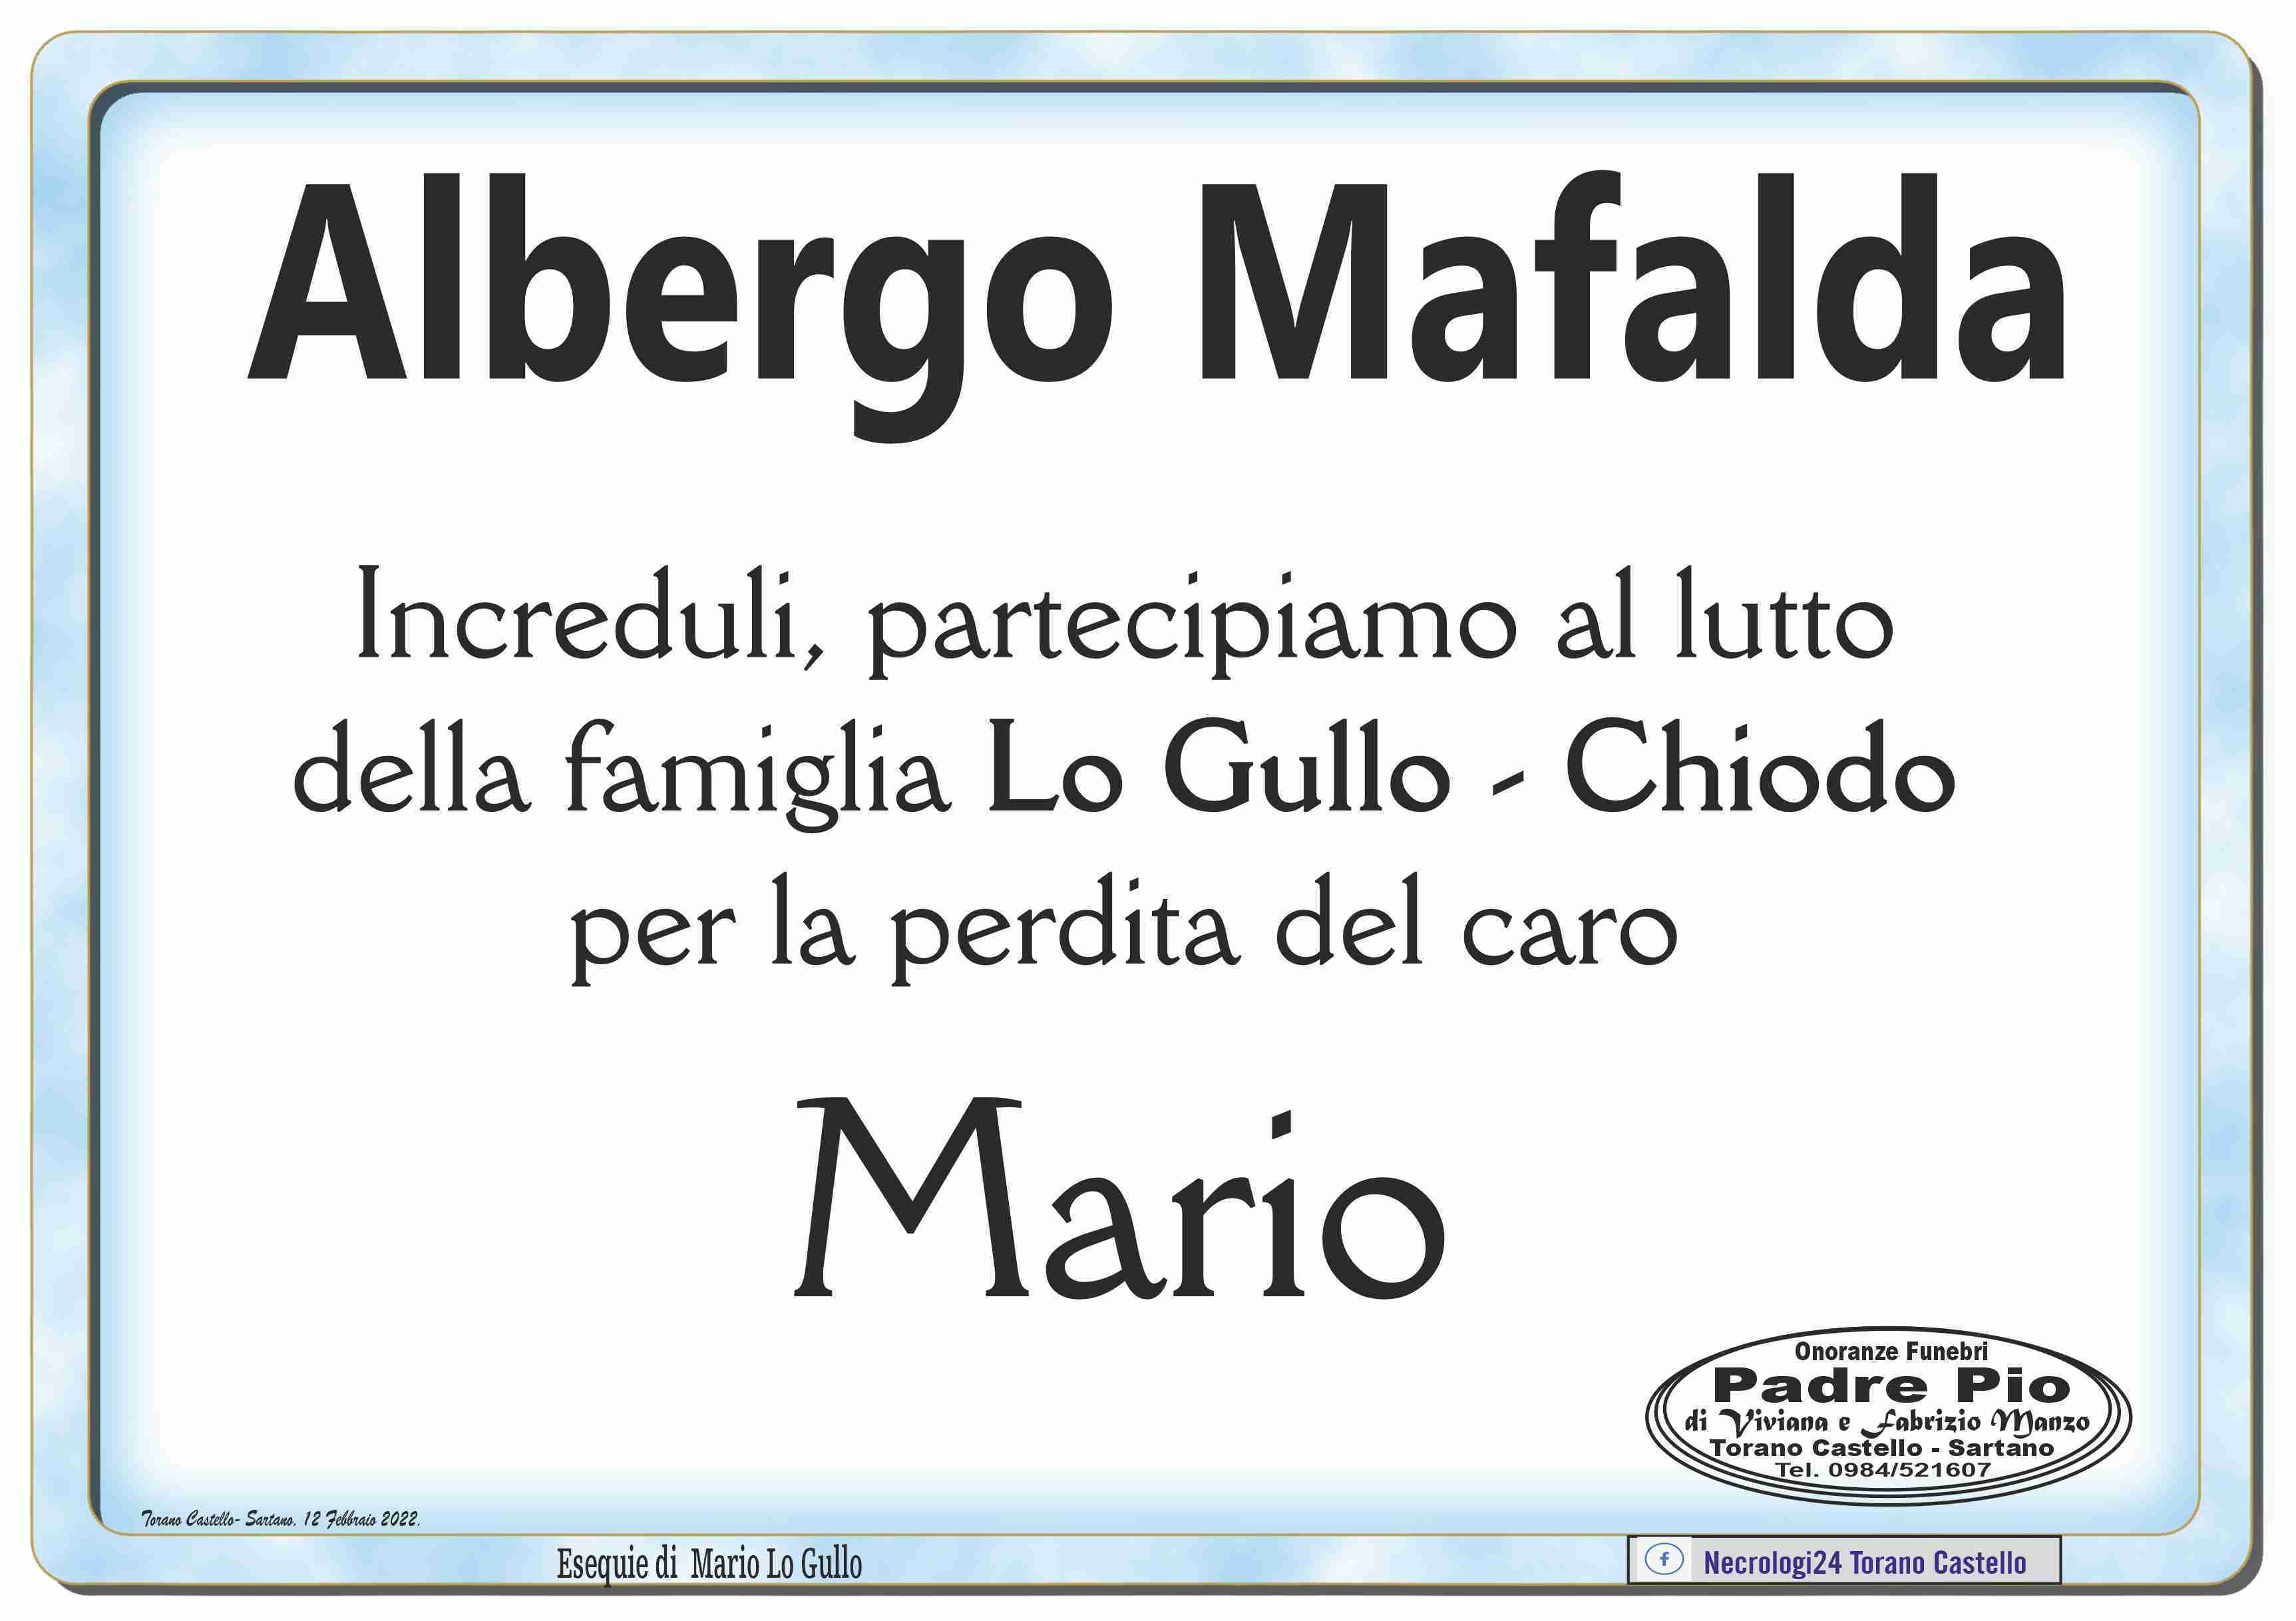 Mario Lo Gullo